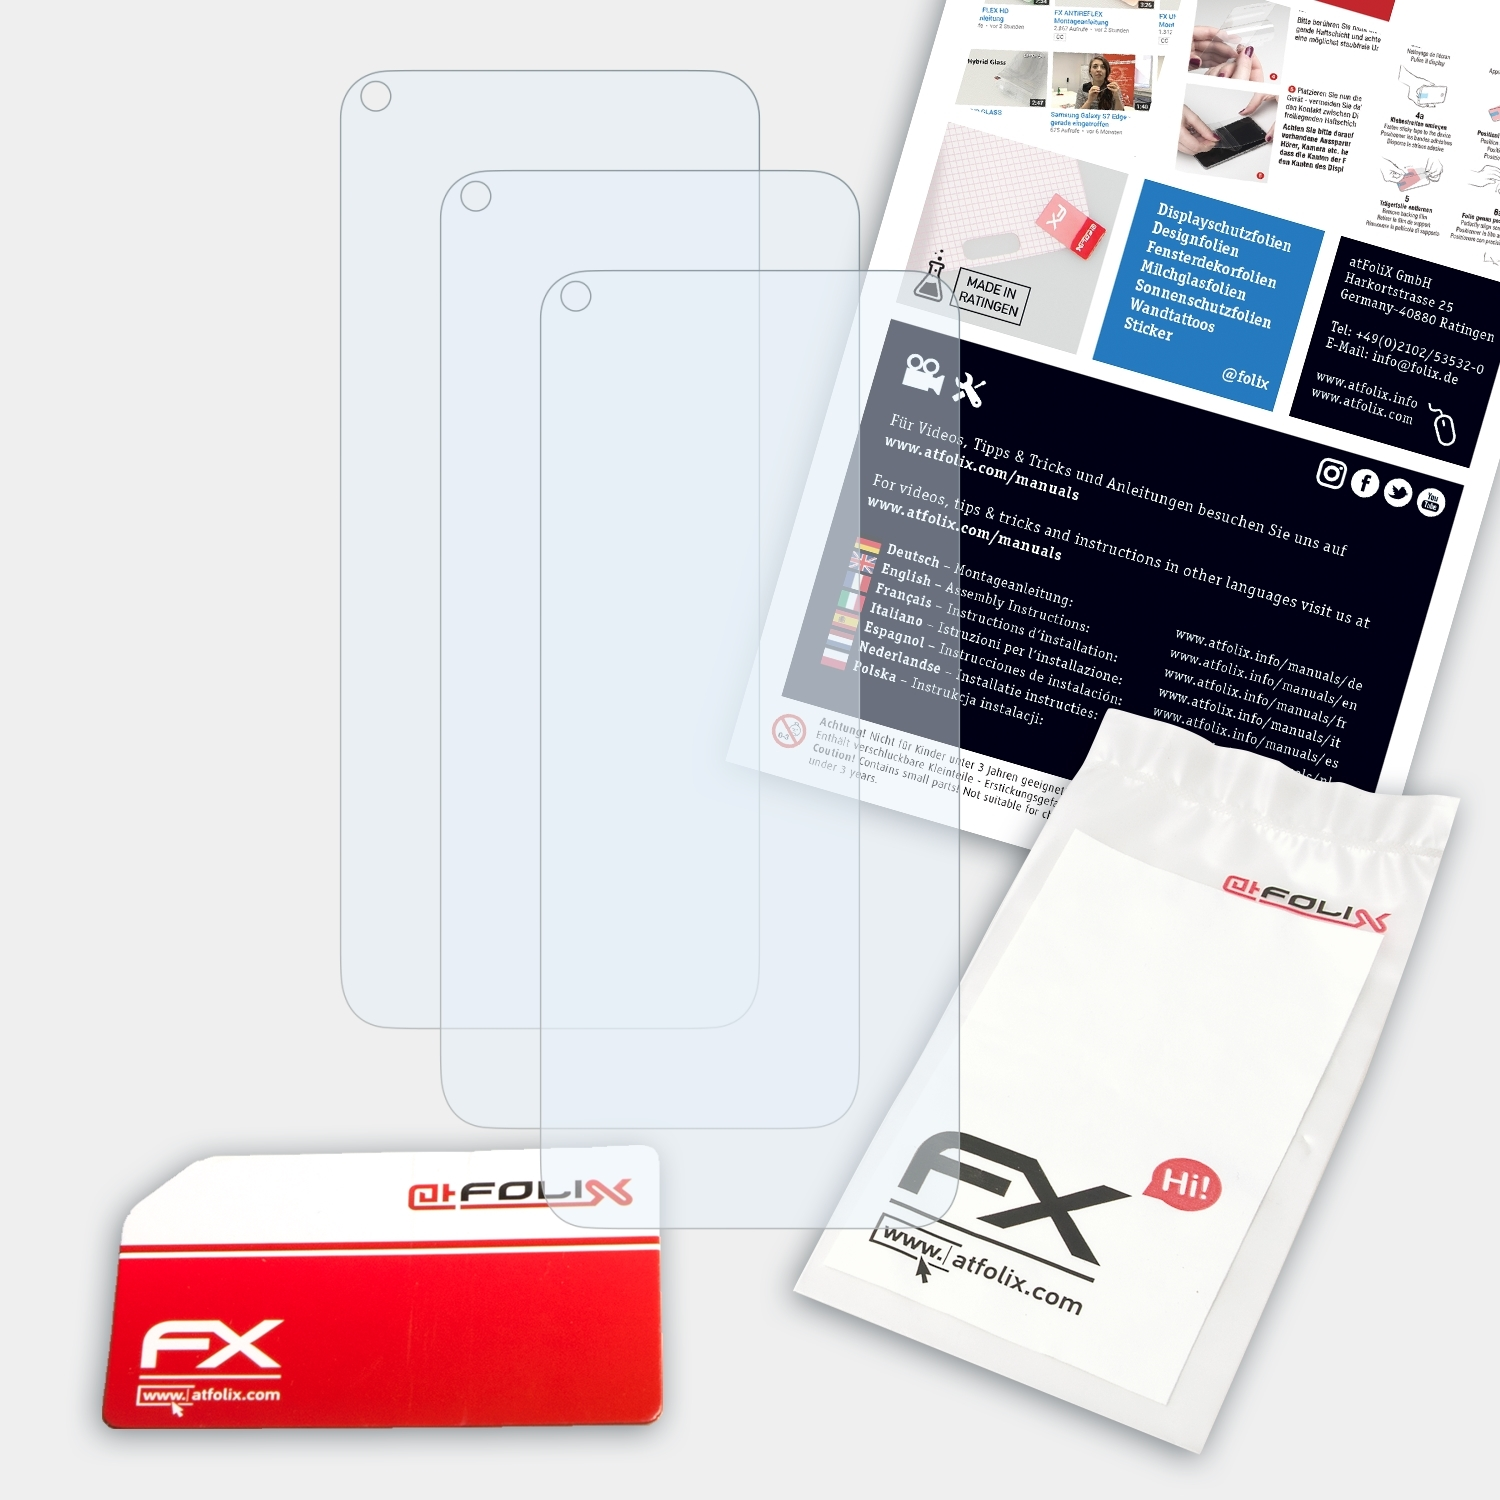 ATFOLIX 5G) 3x Nokia Displayschutz(für 8.3 FX-Clear